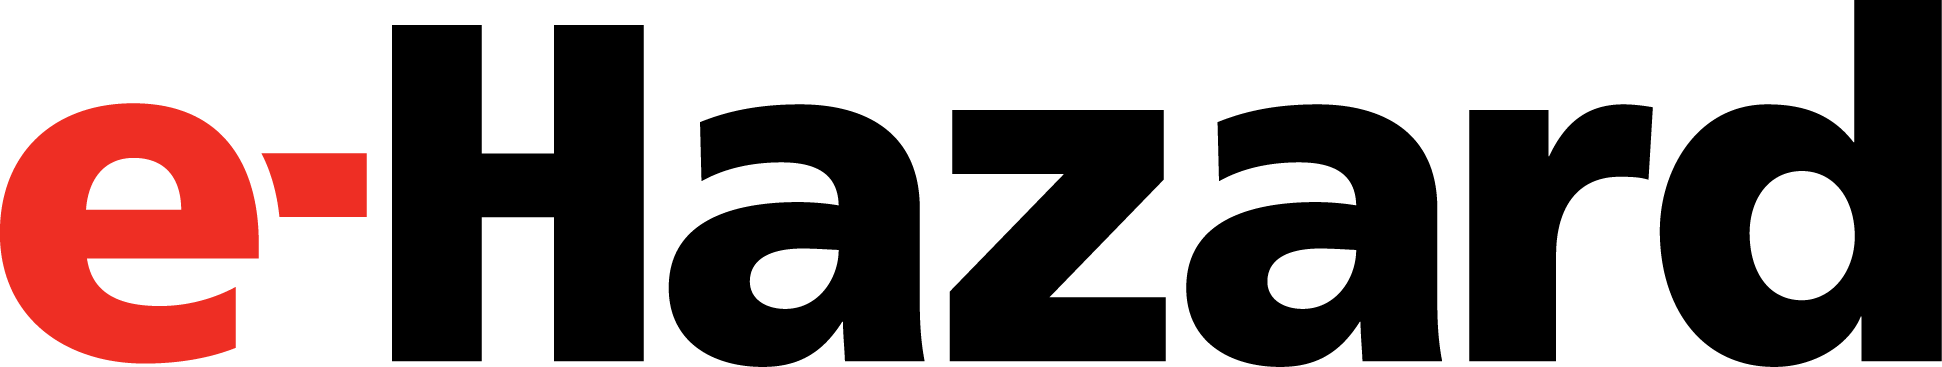 Hazard Logo - Brand Central for e-Hazard - Logos, Marketing Materials, and More